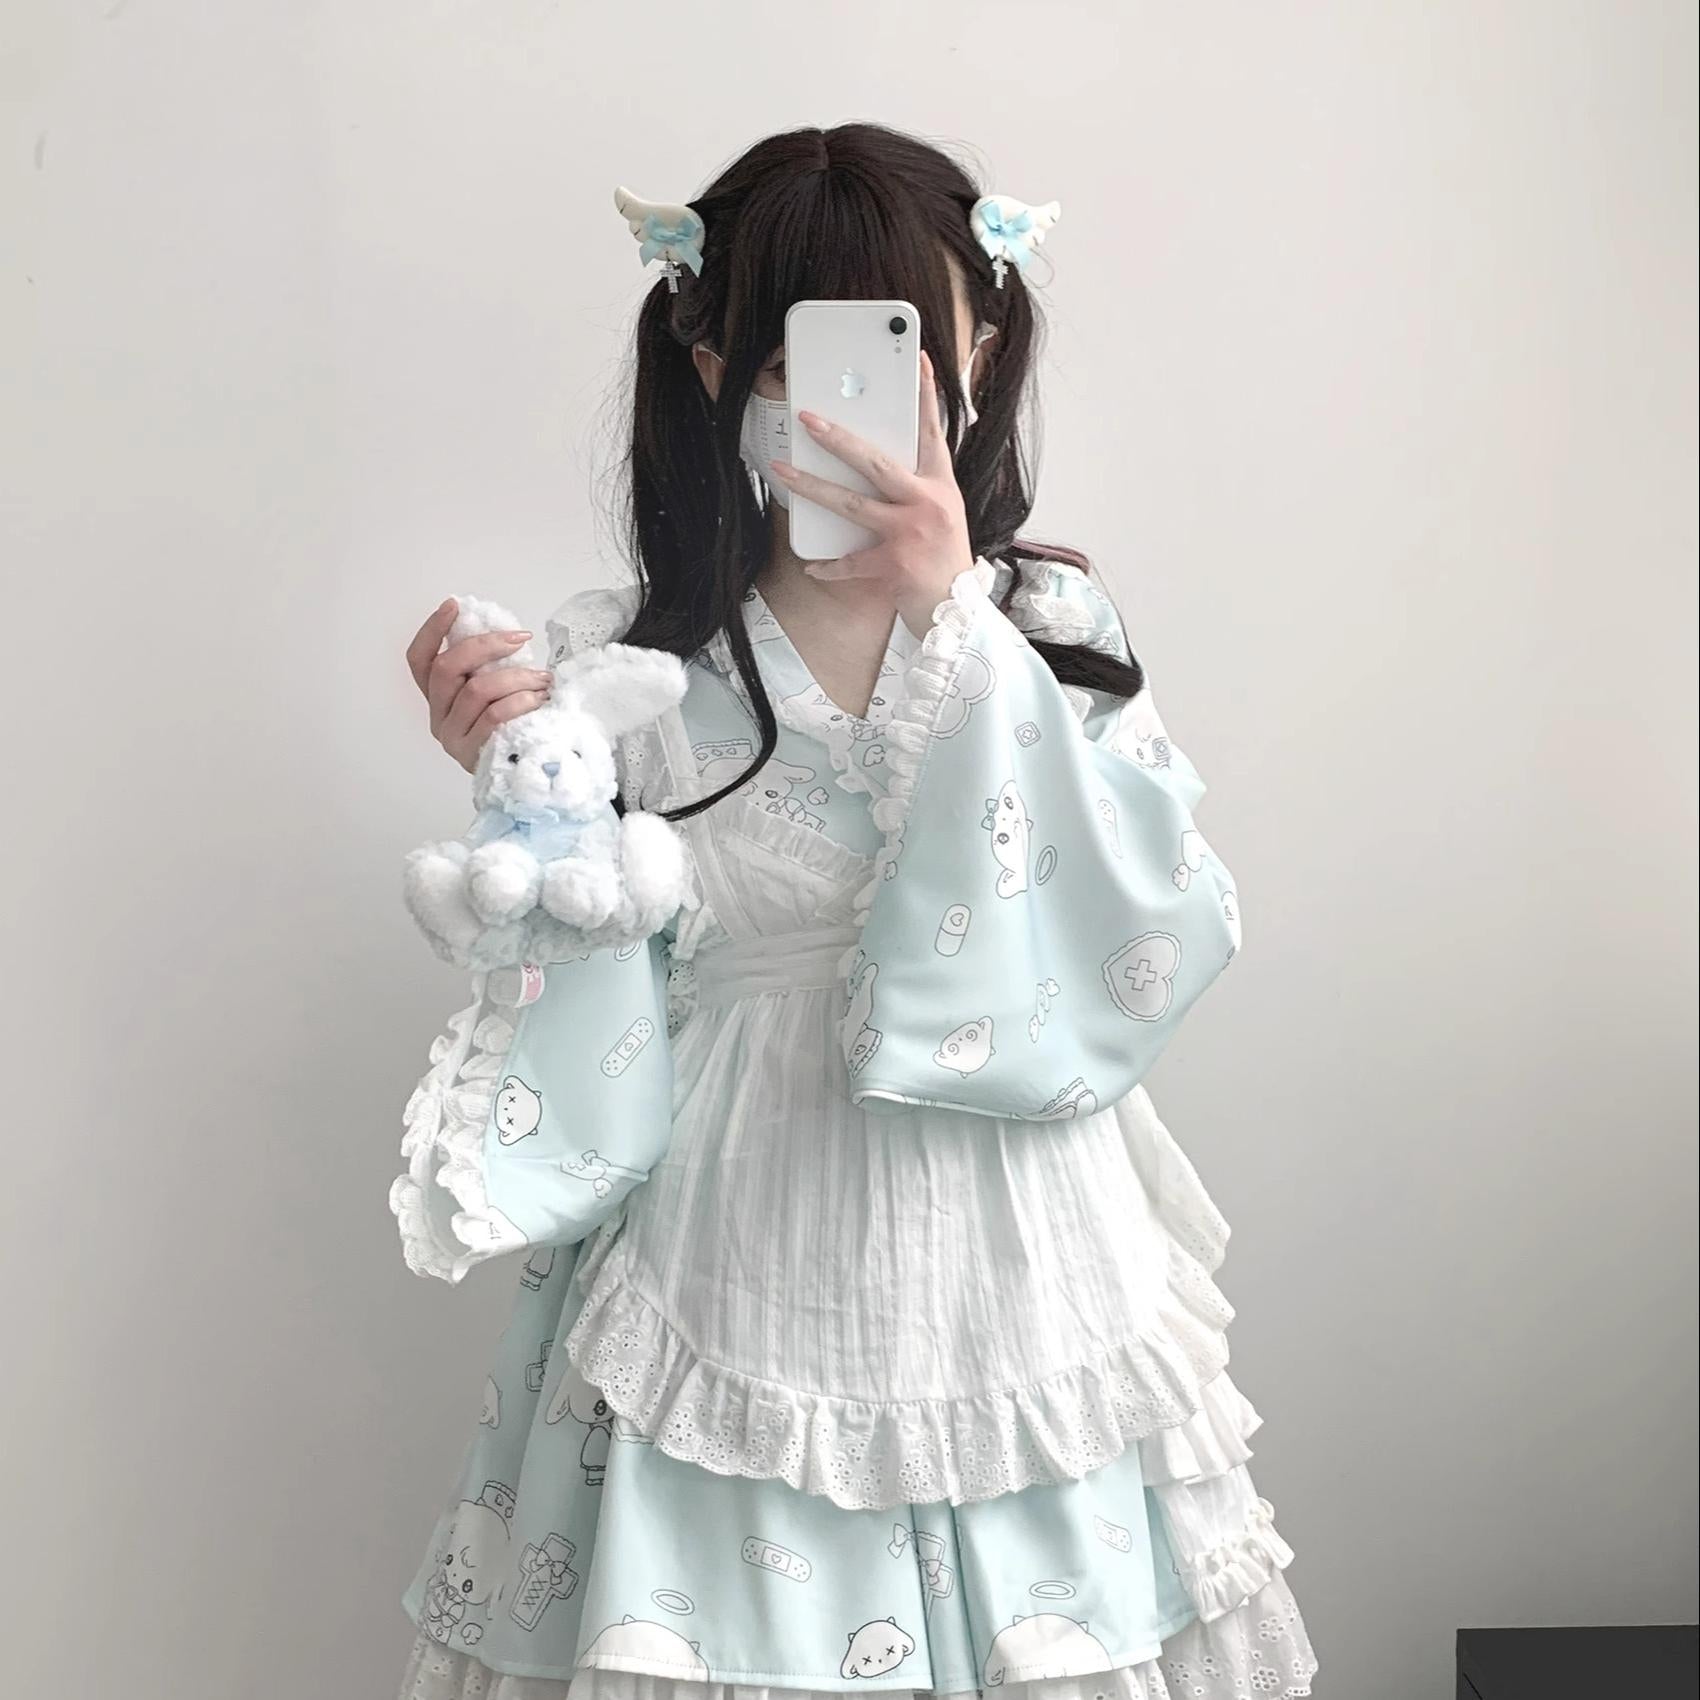 Tenshi Kaiwai Patchwork Skirt Kimono Top White Apron Three-Piece Set 36786:536830